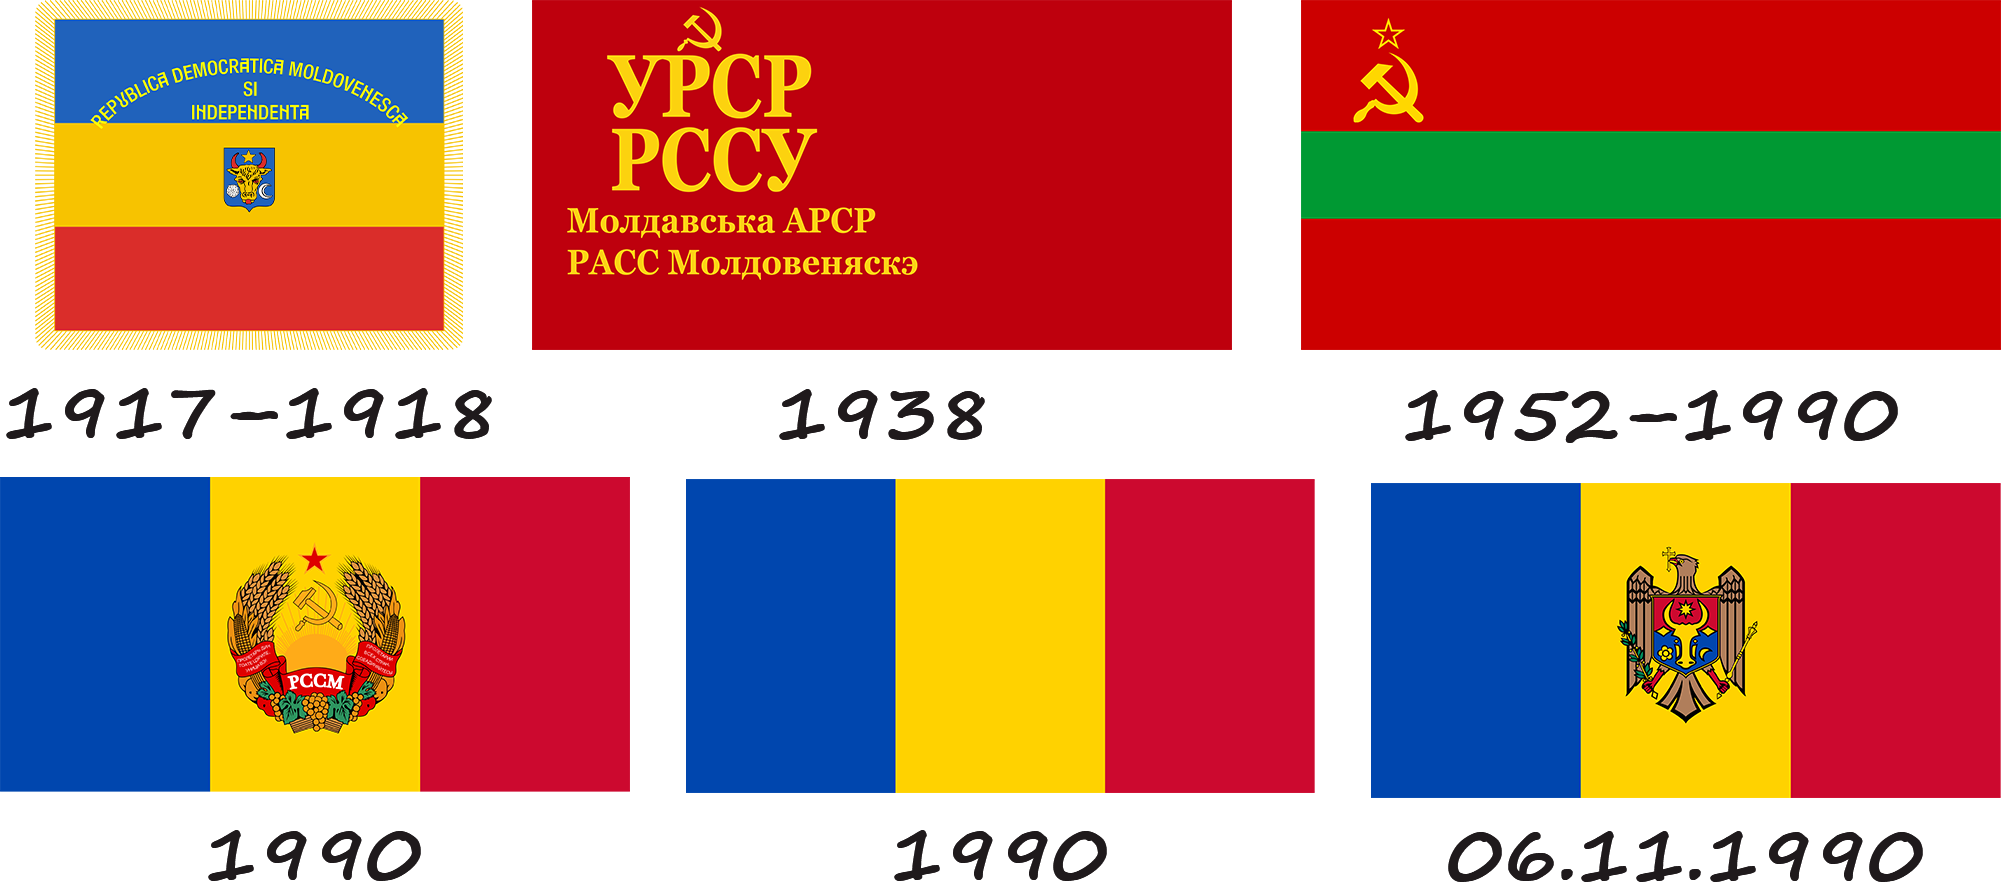 History of the flag of Moldova